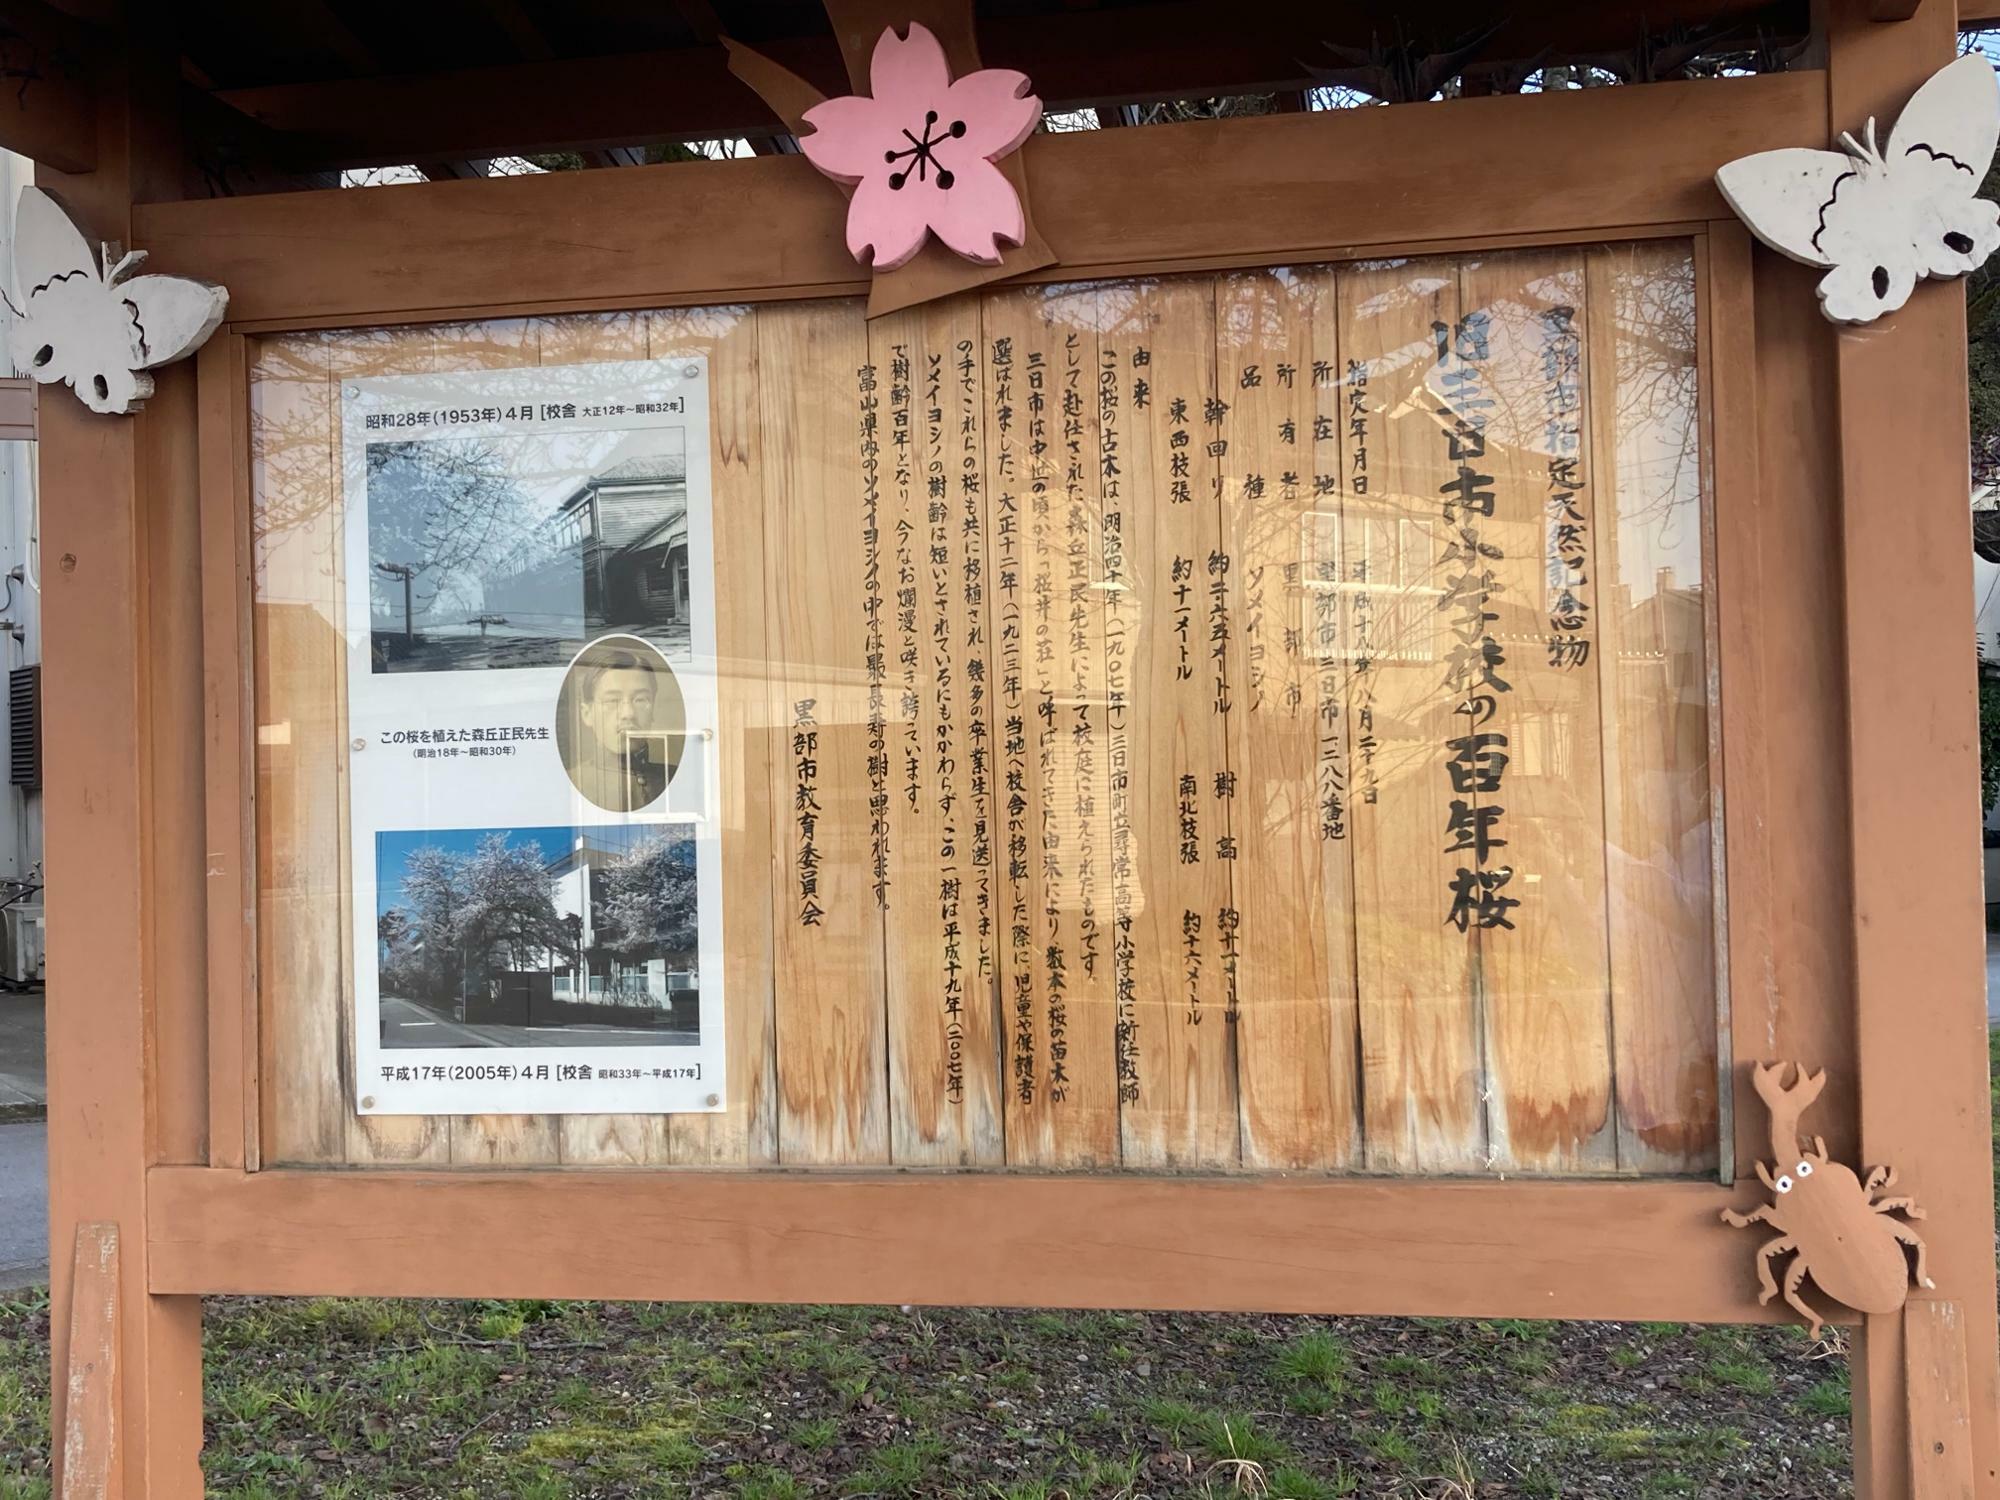 「百年桜」の概要を記した立て看板。